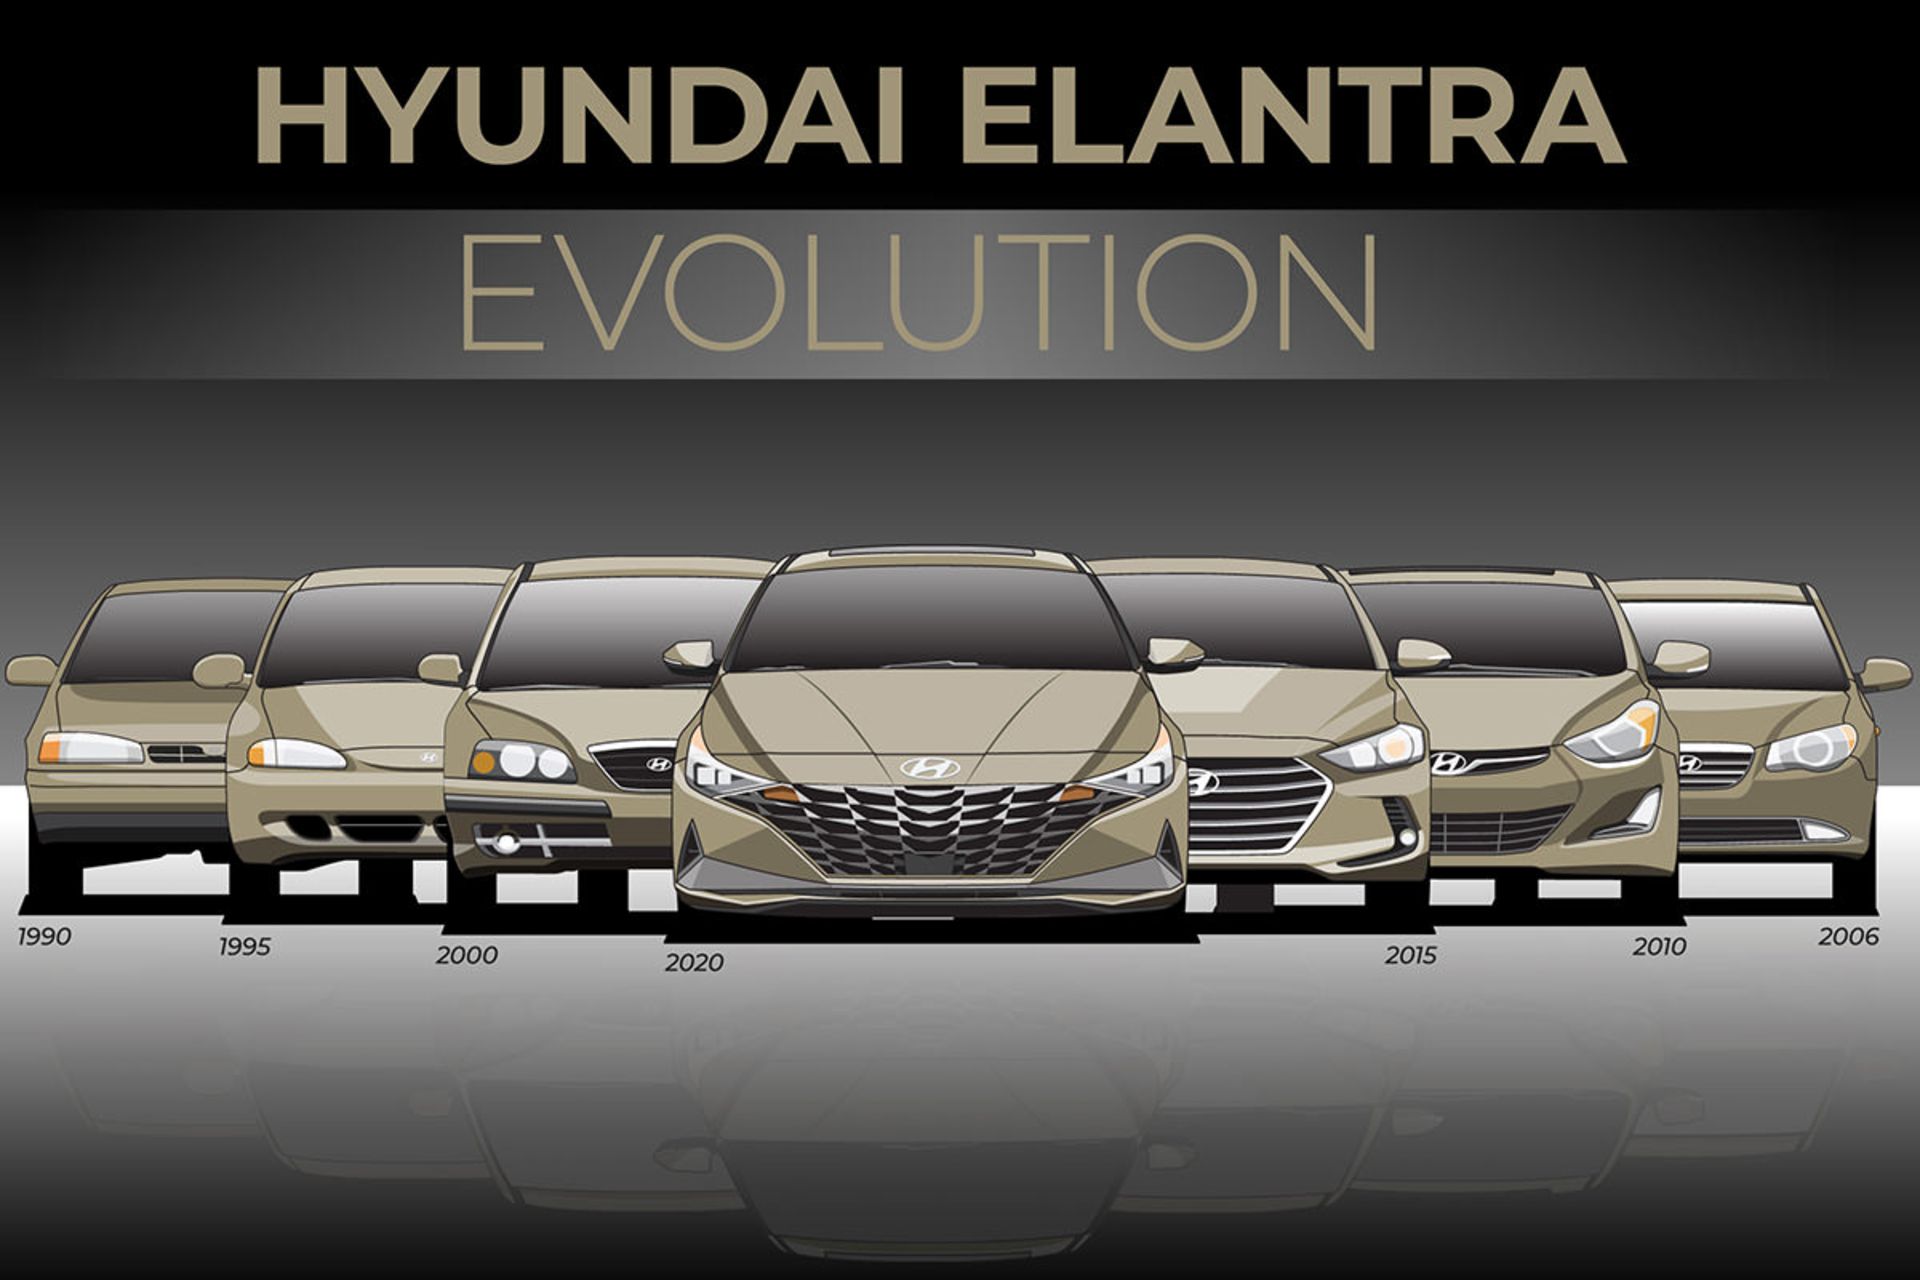 تغییر نسل خودرو هیوندای النترا / Hyundai Elantra evolution